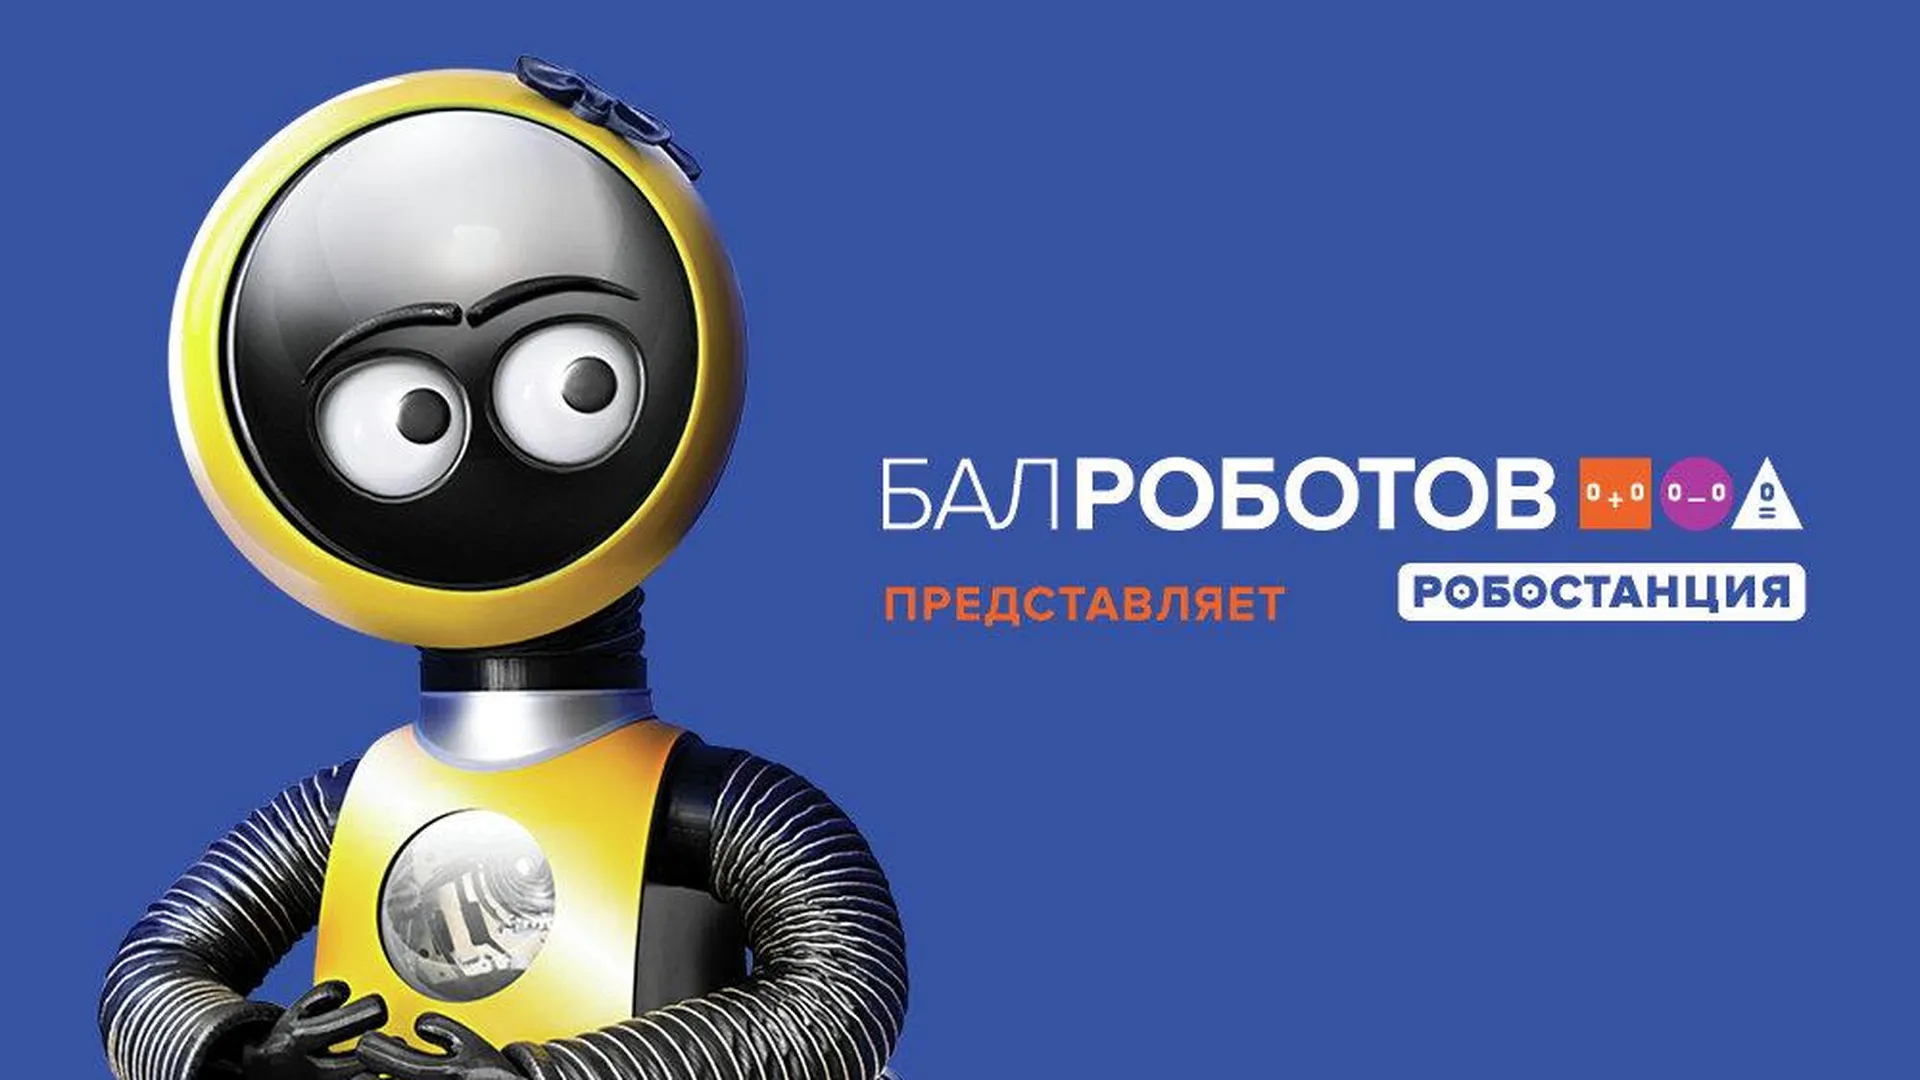 Интерактивная выставка «Робостанция» на ВДНХ в Москве откроется 26 марта